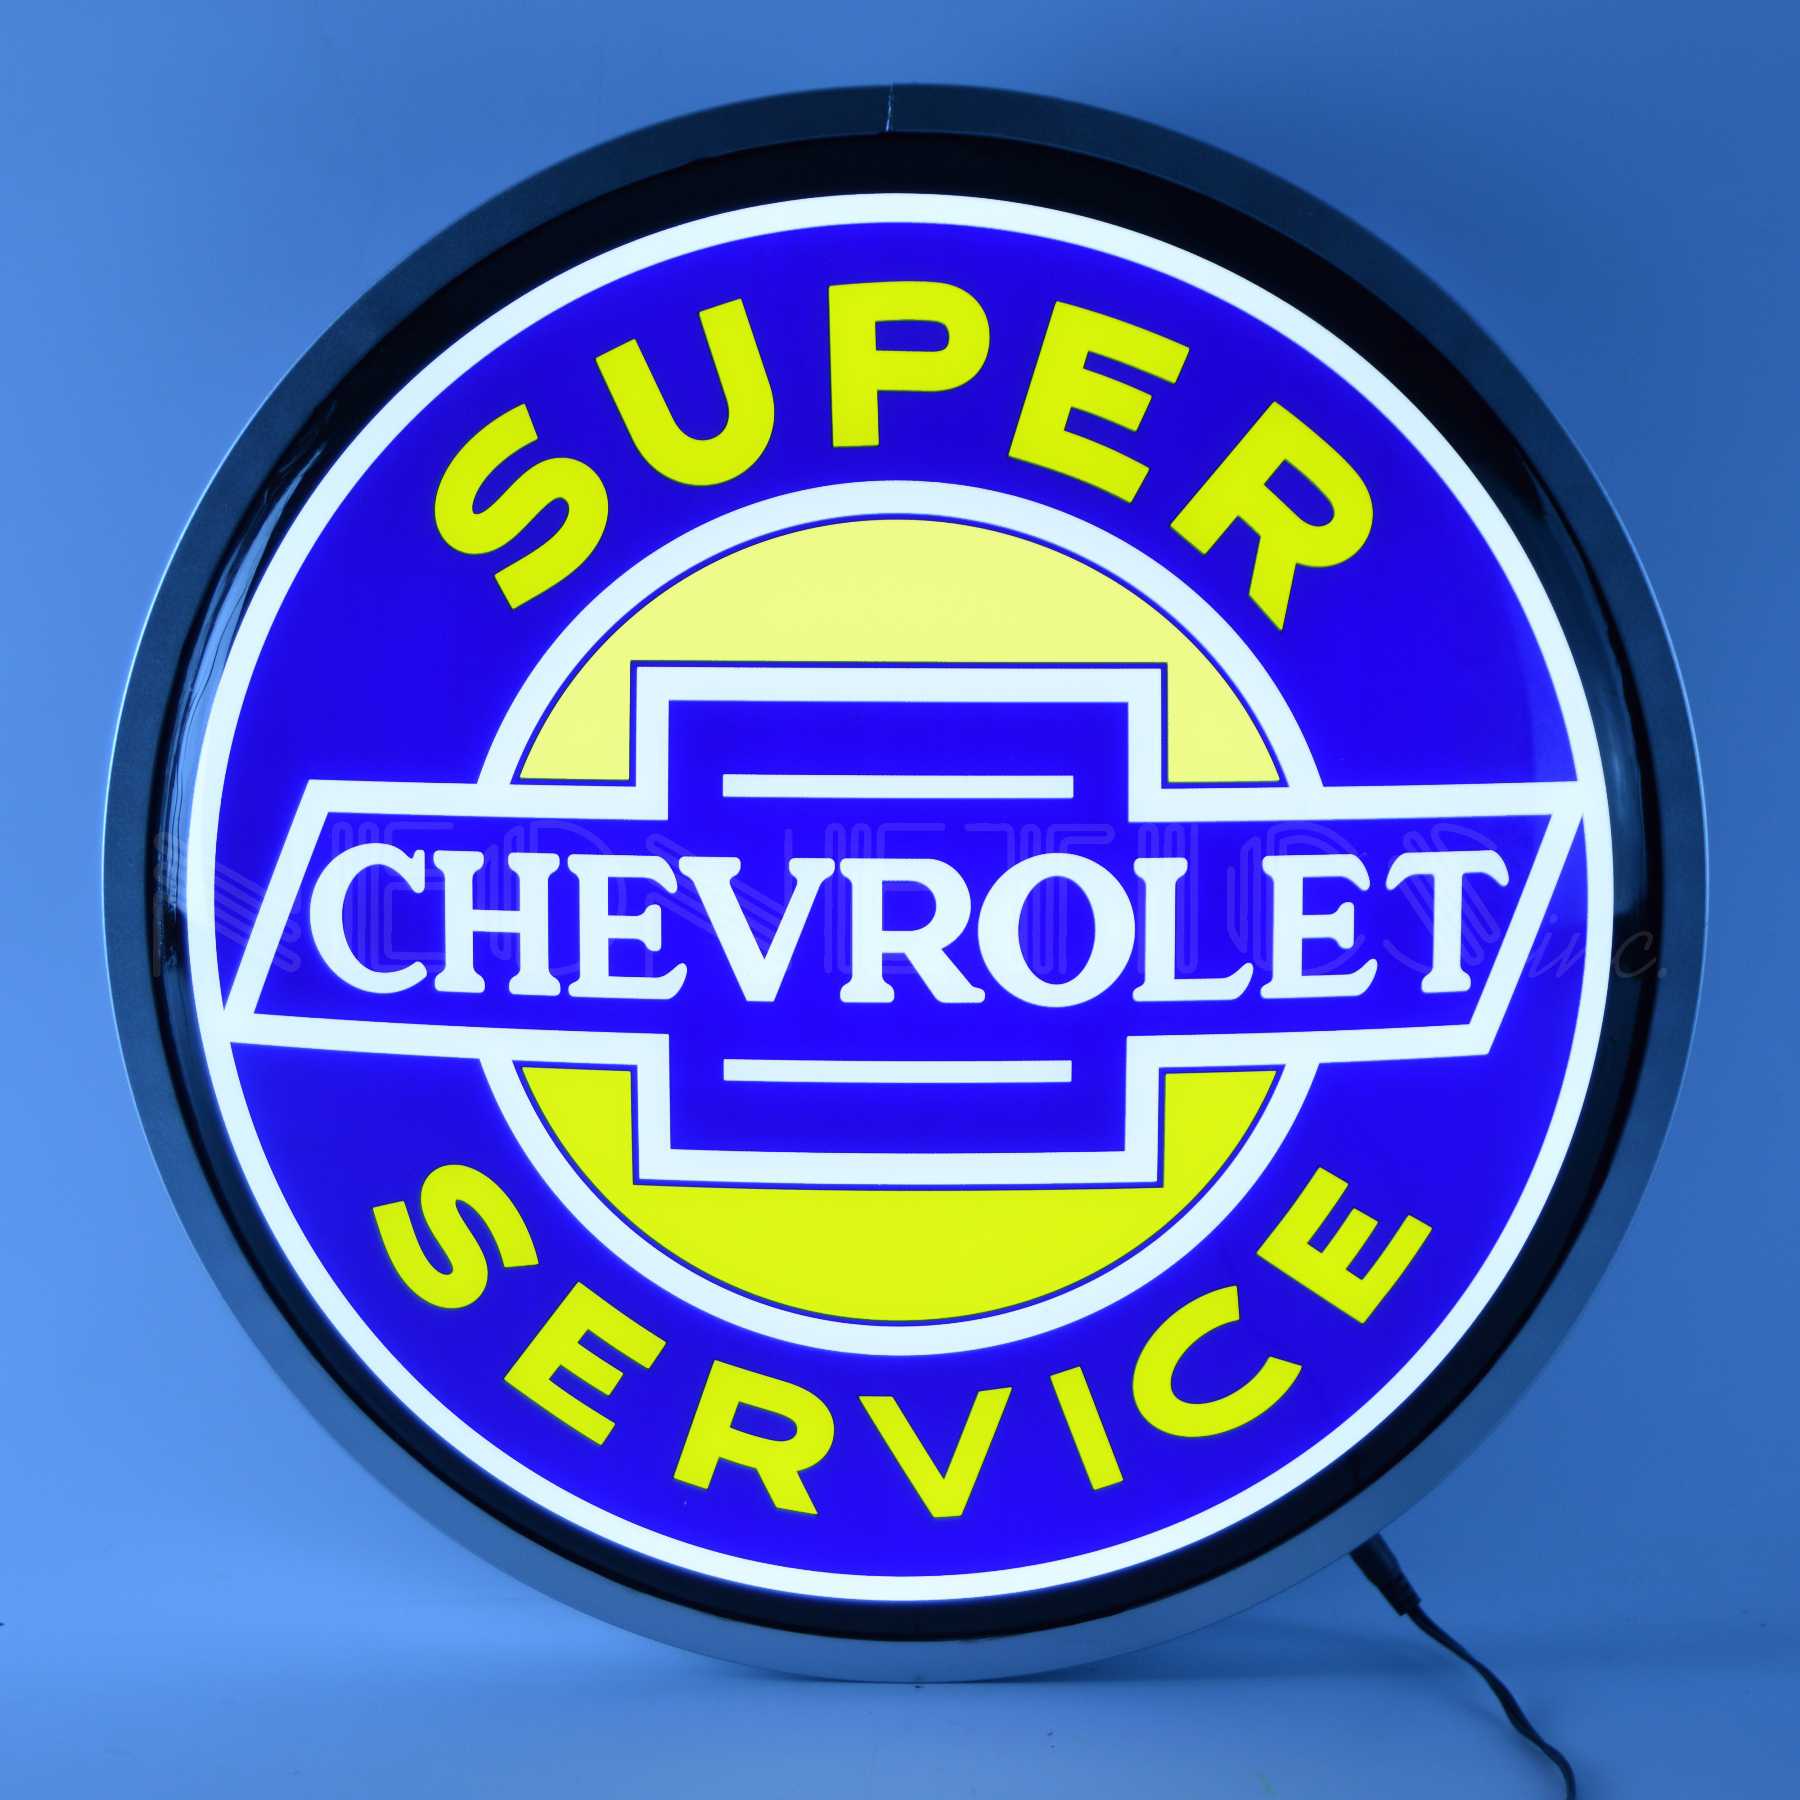 SUPER CHEVROLET SERVICE 15 INCH BACKLIT LED LIGHTED SIGN